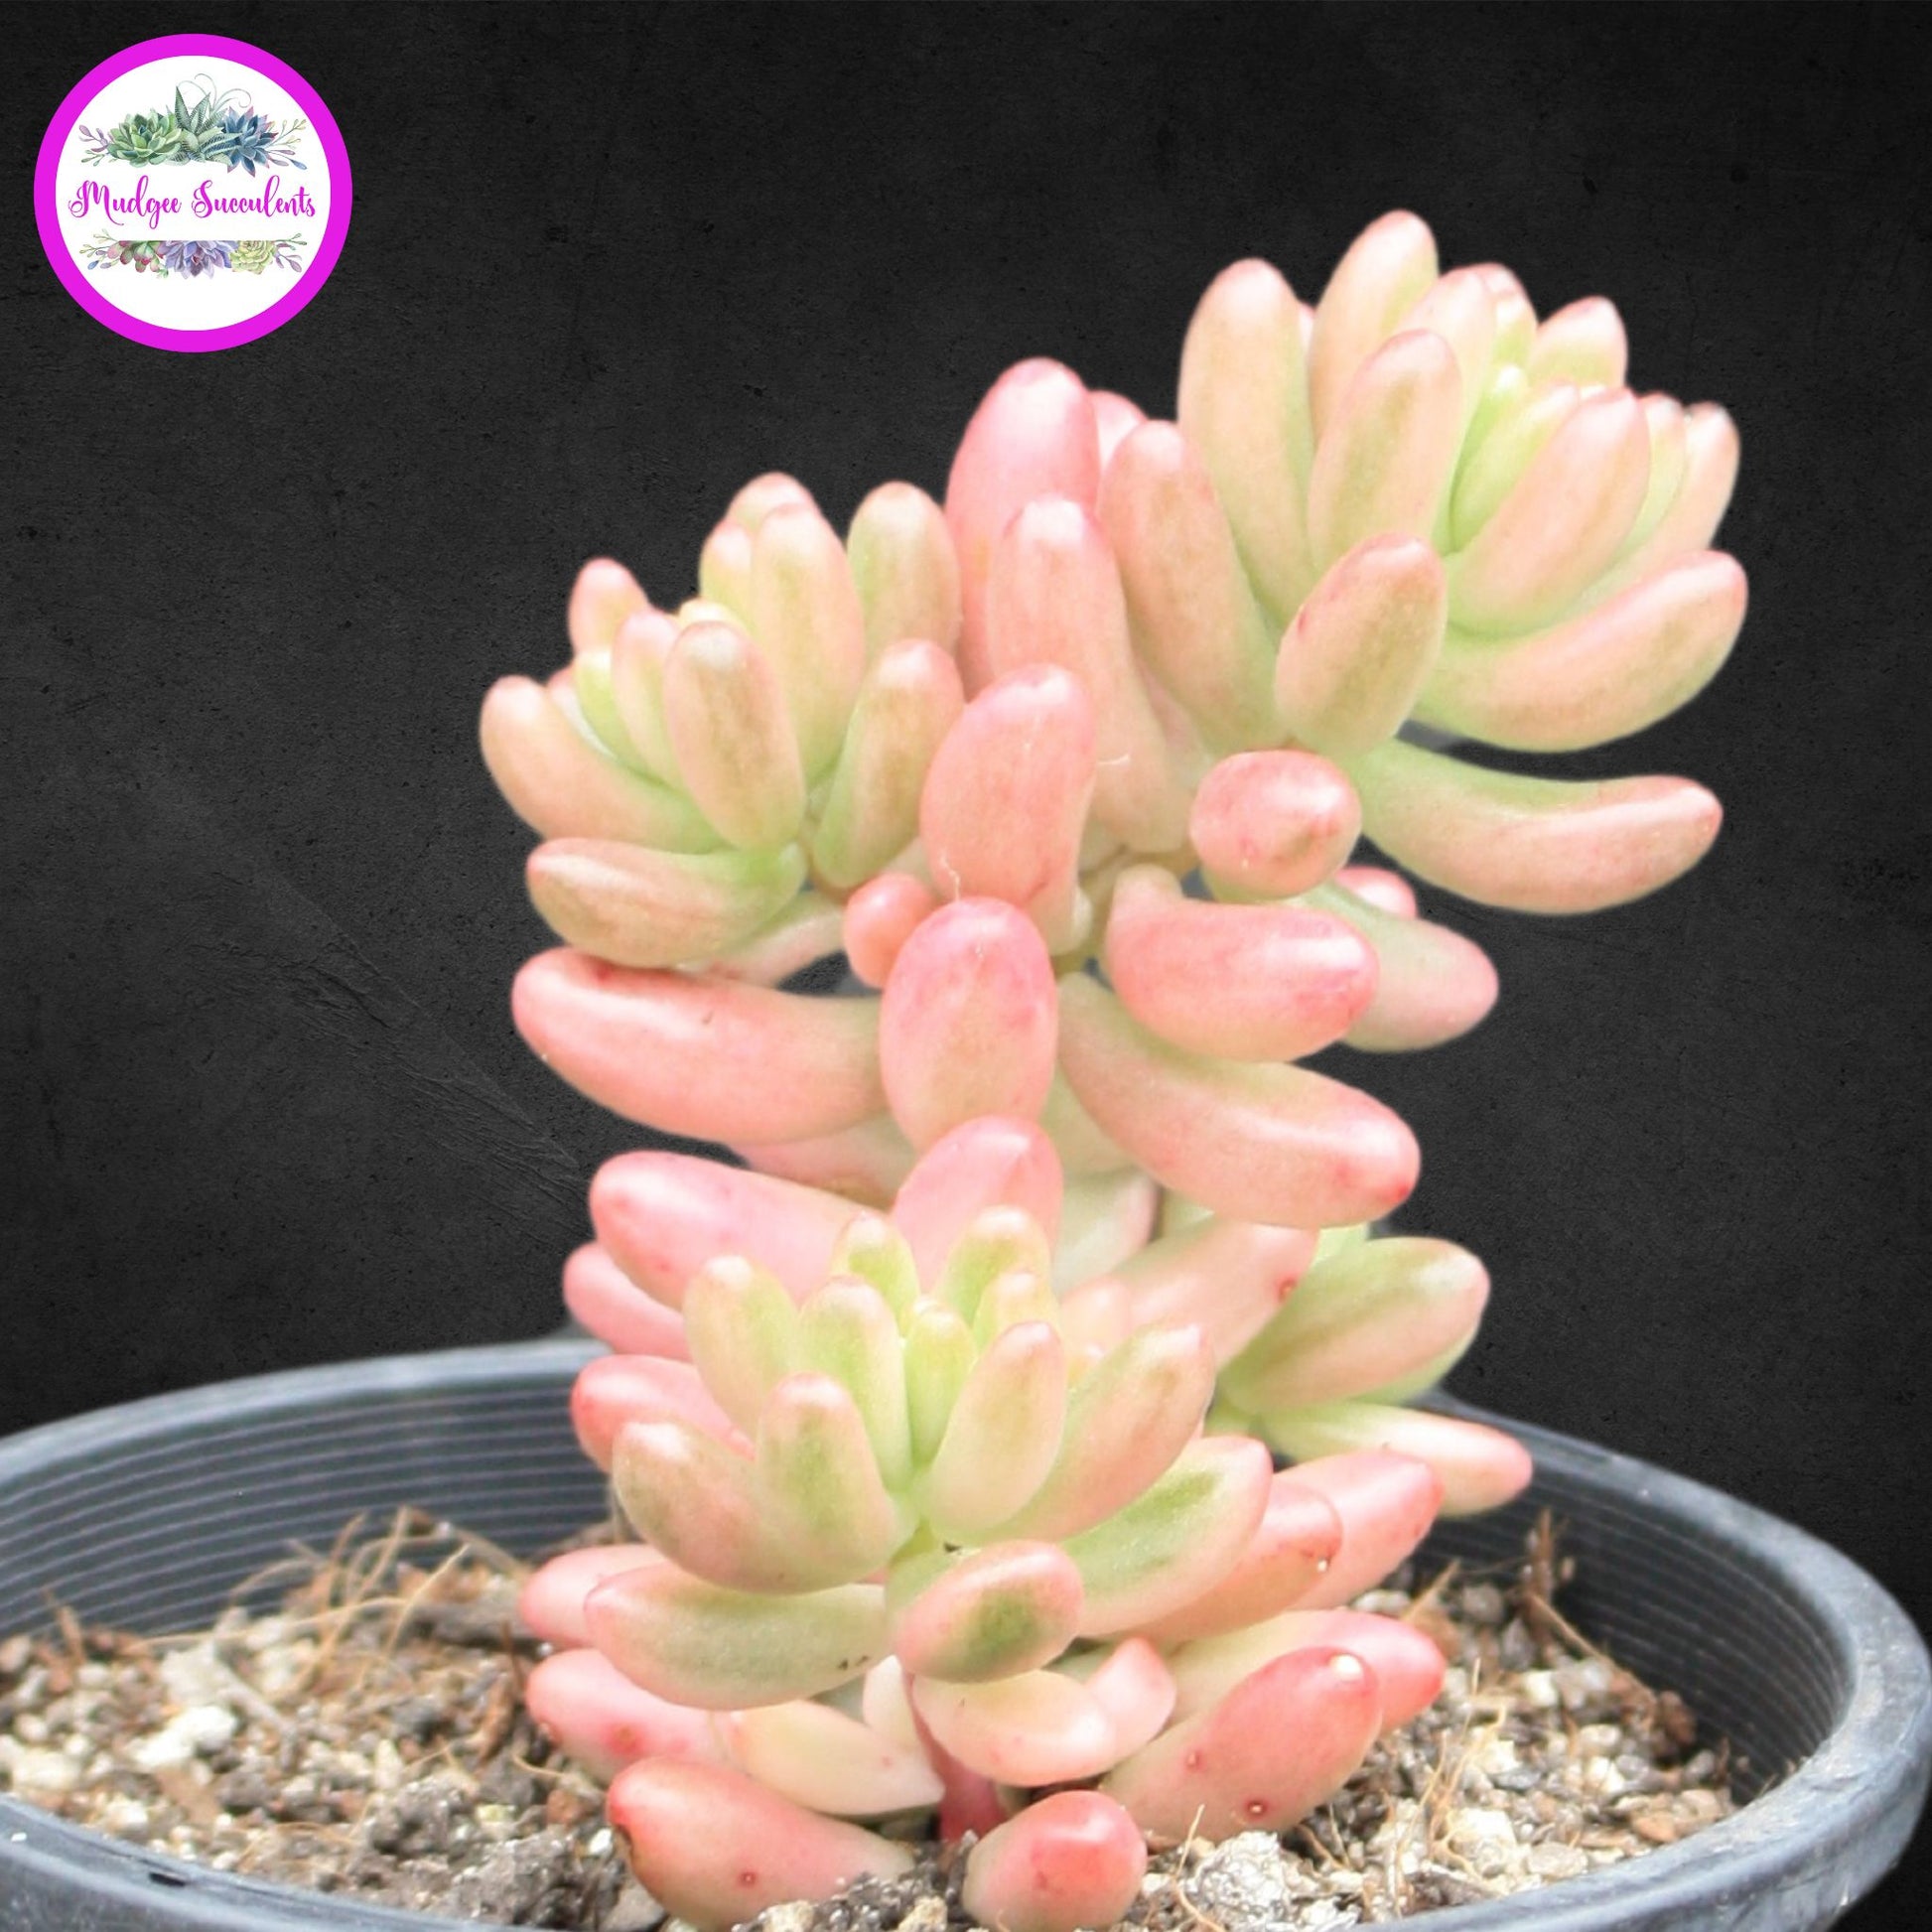 Succulent Plant - Sedum rubrotinctum 'Aurora' - Mudgee Succulents Online Shop